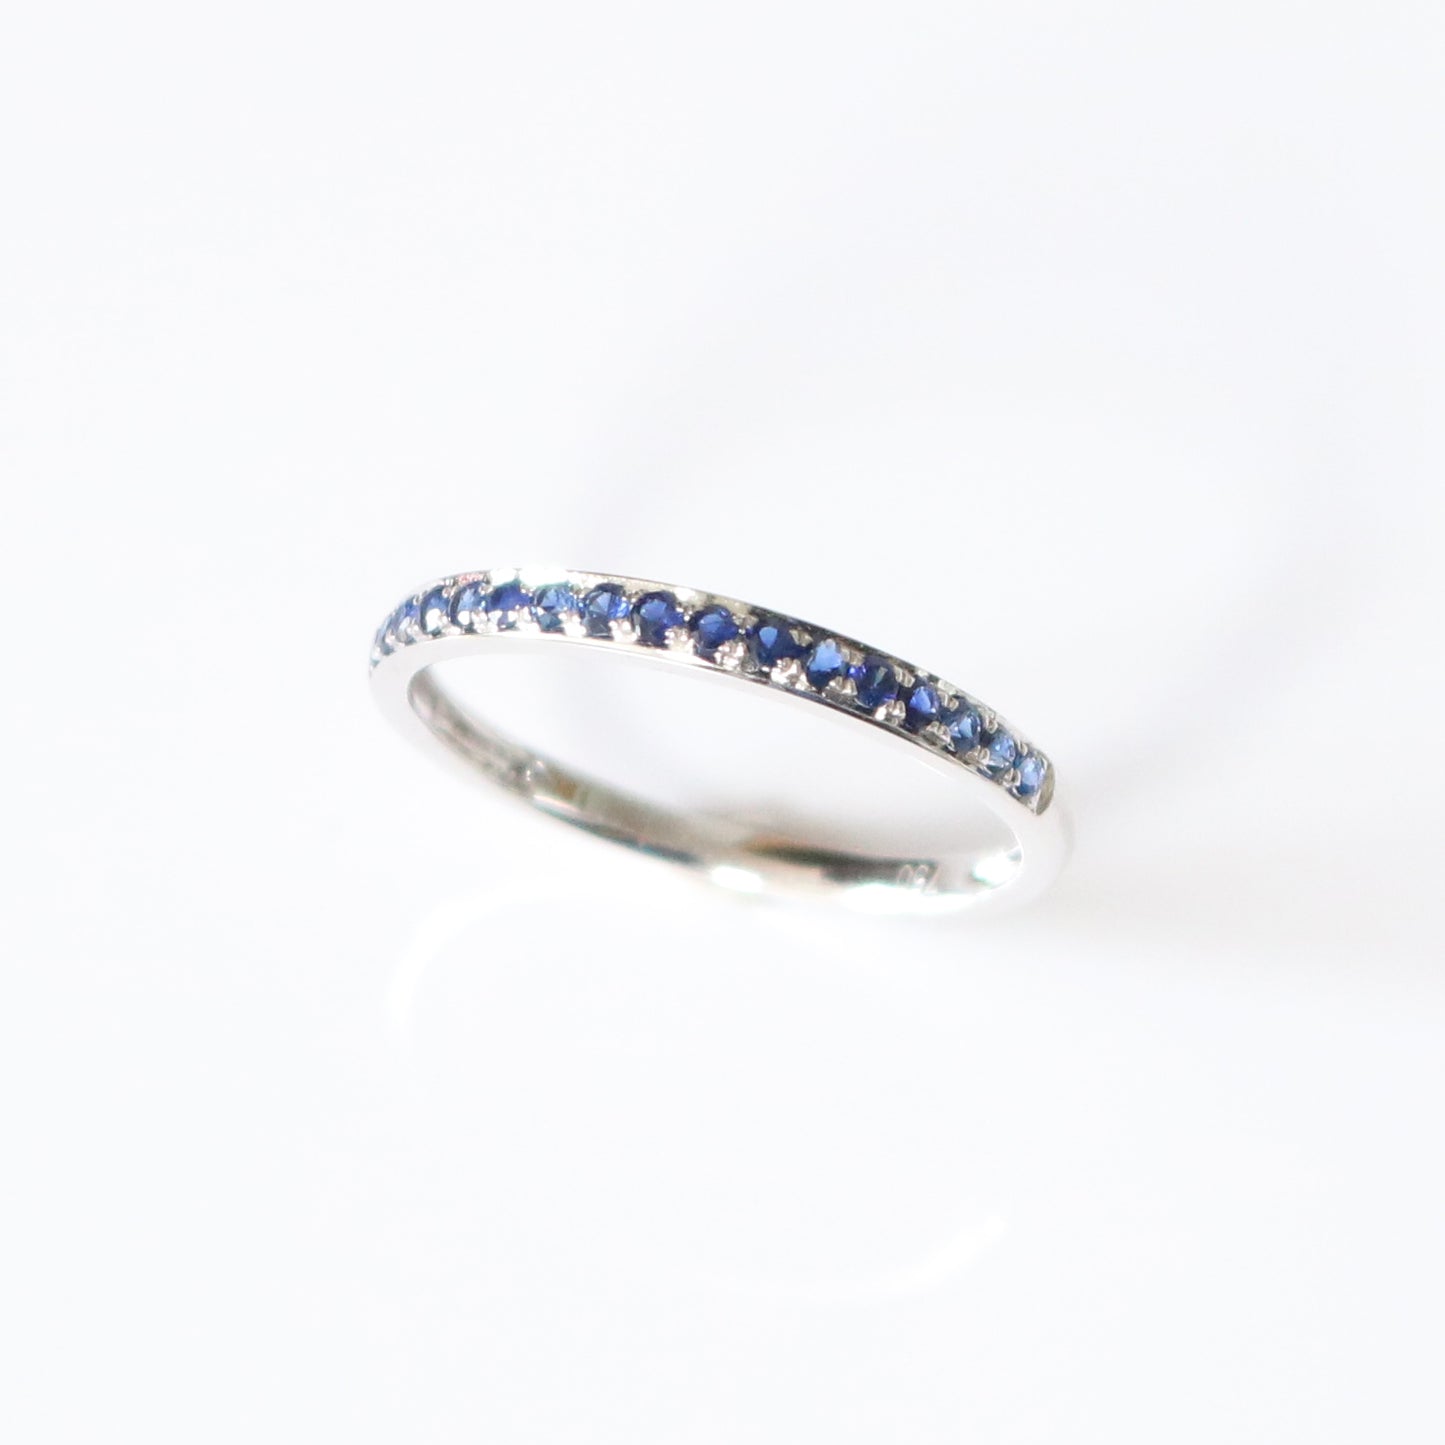 紅寶石線戒的藍寶石版本 Adelle Ruby ring in sapphire version